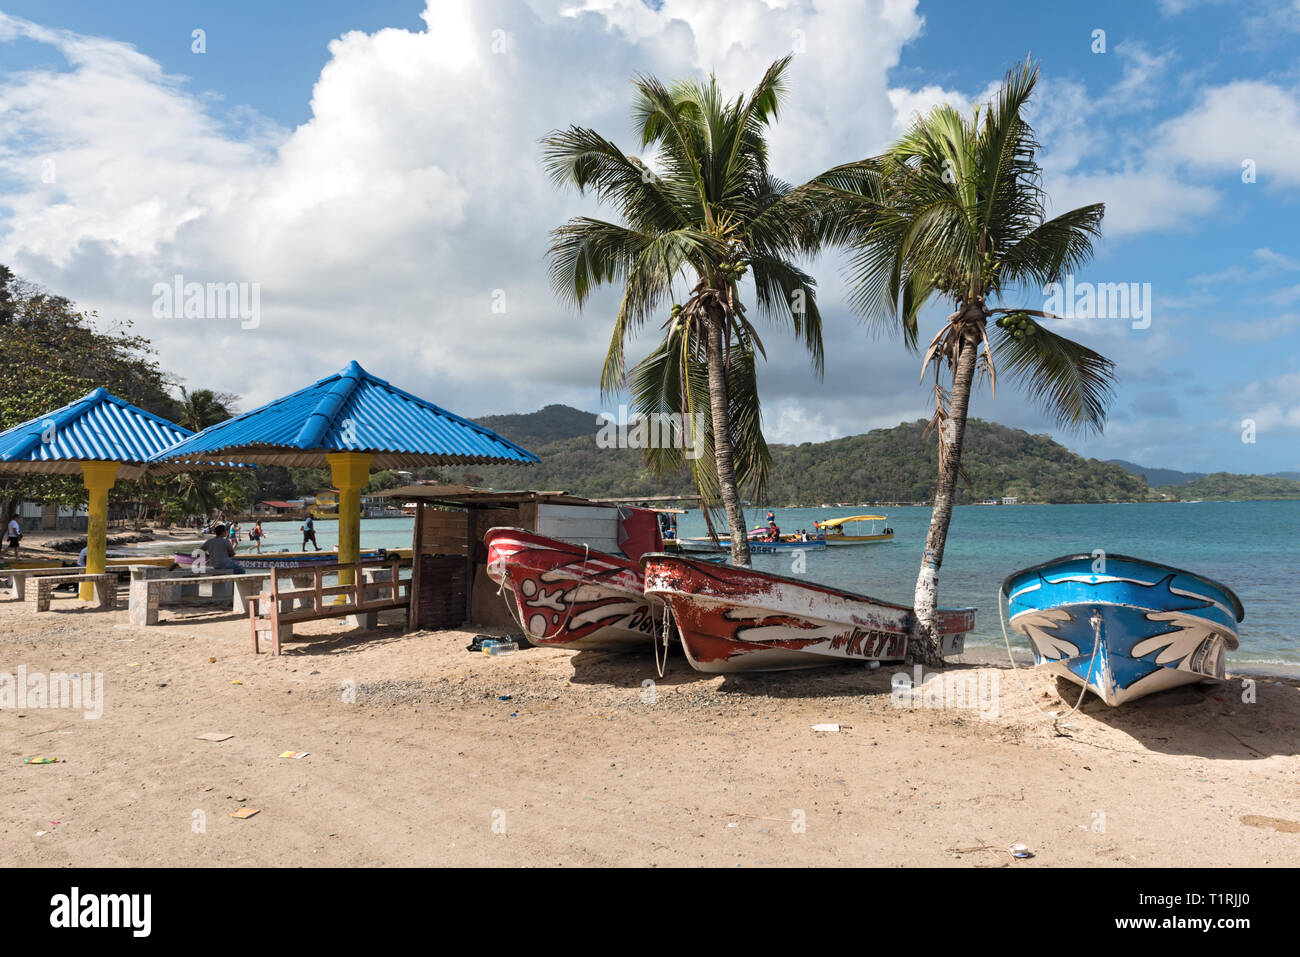 boats at the caribbean beach in puerto lindo panama Stock Photo